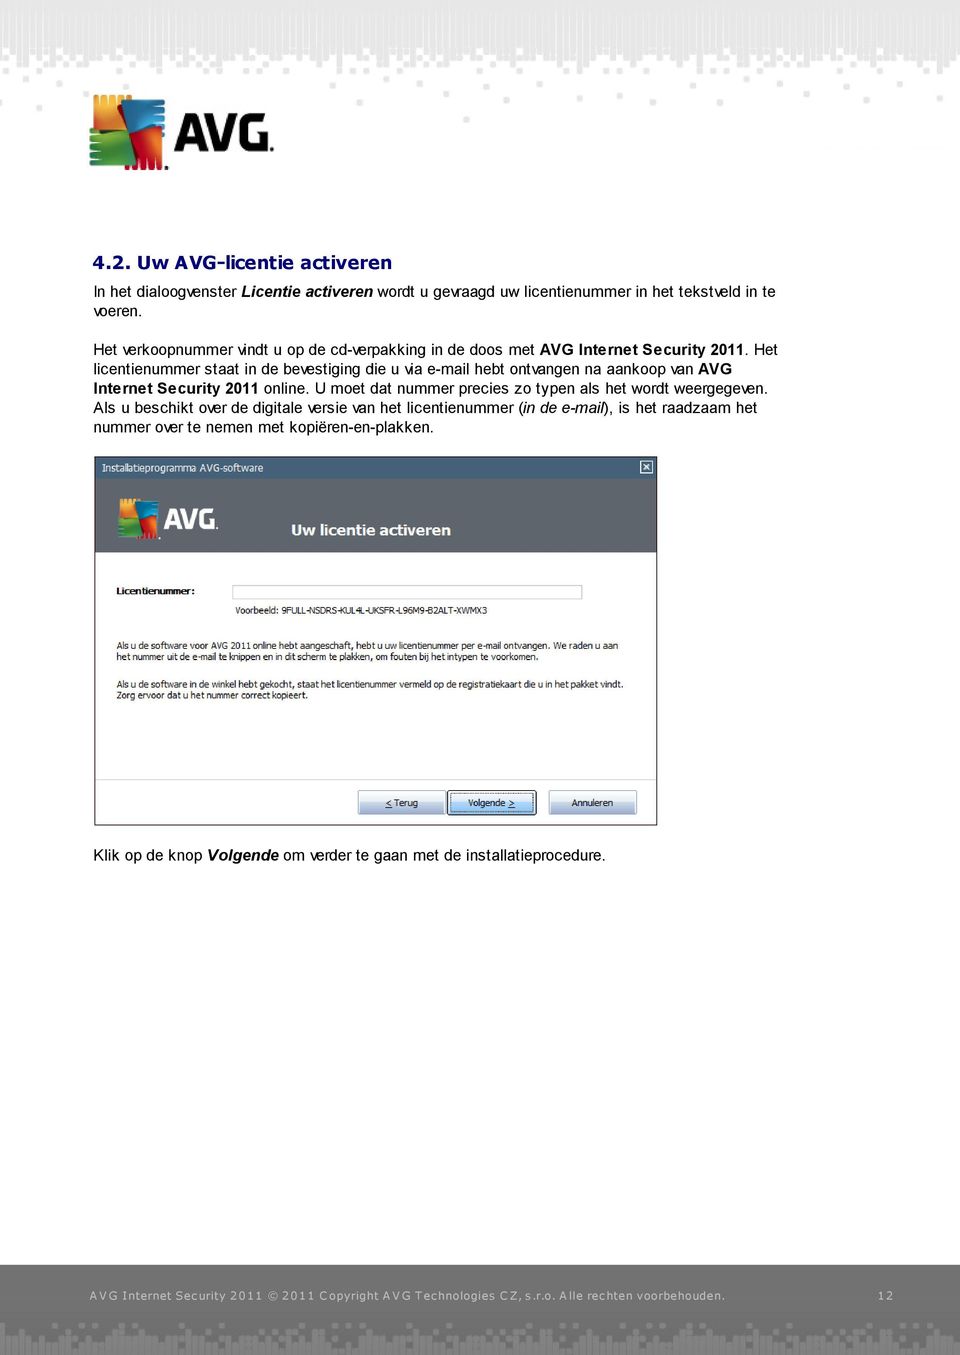 Het licentienummer staat in de bevestiging die u via e-mail hebt ontvangen na aankoop van AVG Internet Security 2011 online.